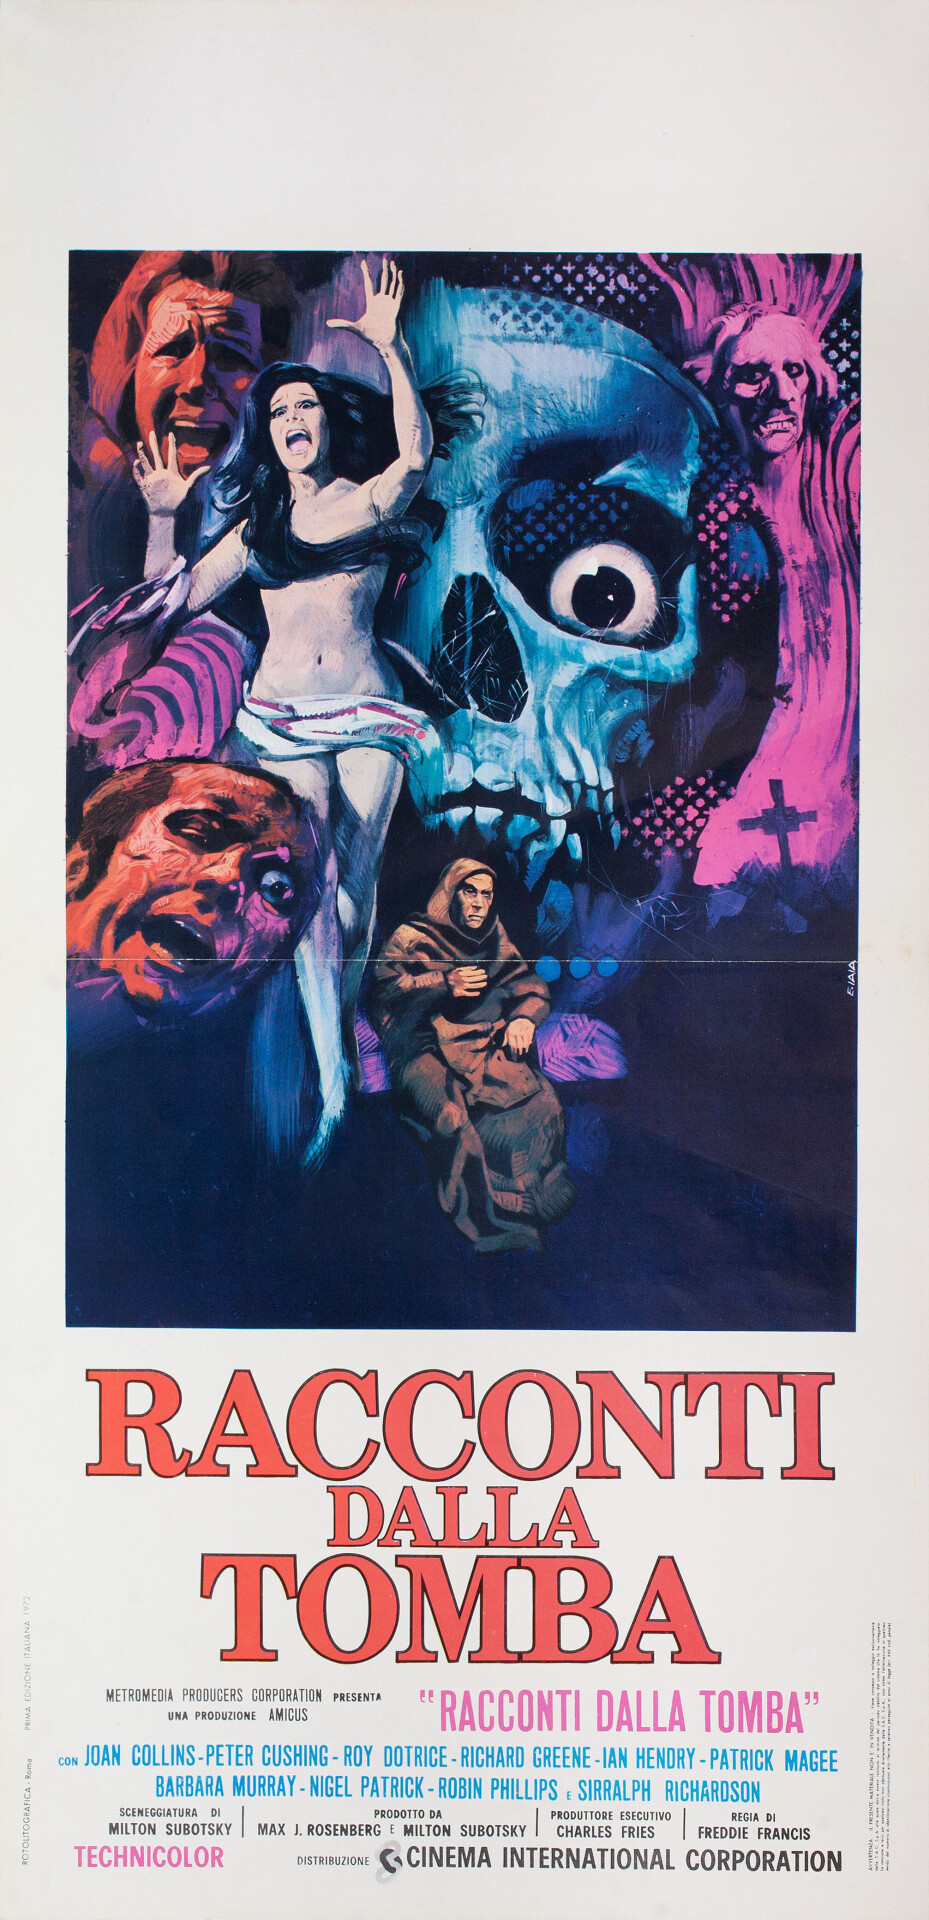 Байки из склепа (Tales from the Crypt, 1972), режиссёр Фредди Фрэнсис, итальянский постер к фильму, автор Пьеро Эрманно Иайя (ужасы, 1972 год)